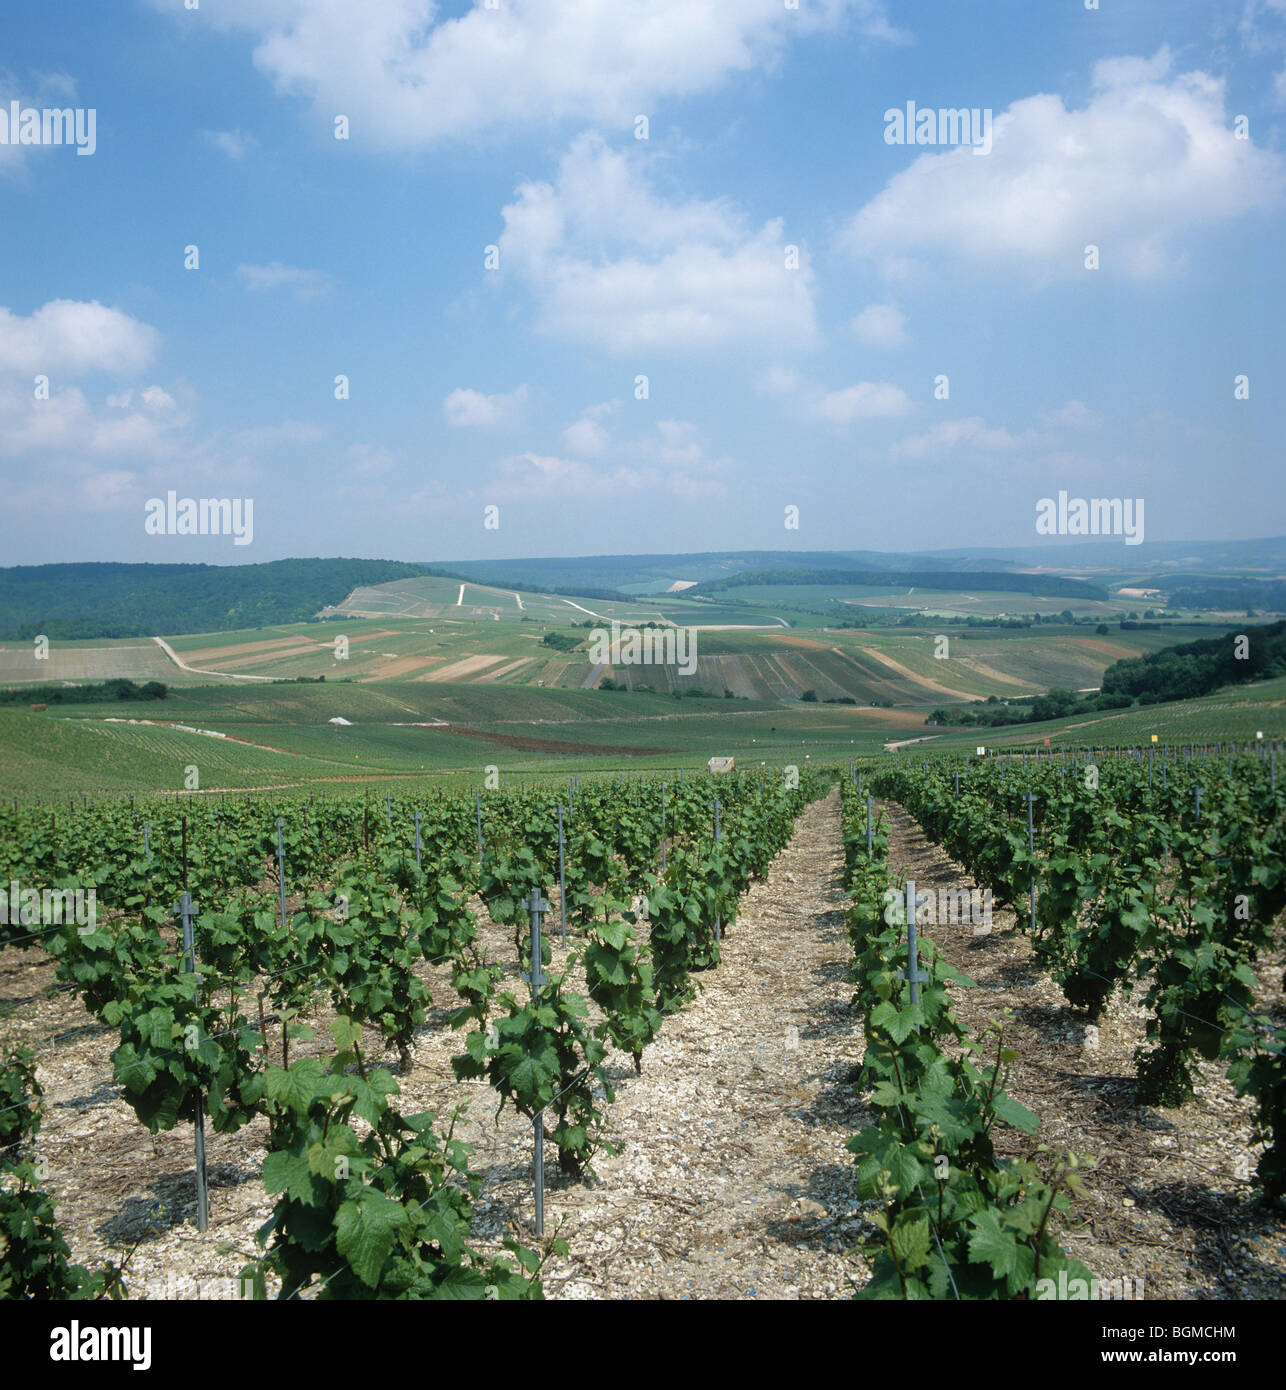 Weit reichenden Blick auf Weinberge in Blütenknospe in der Champagne, Frankreich Stockfoto